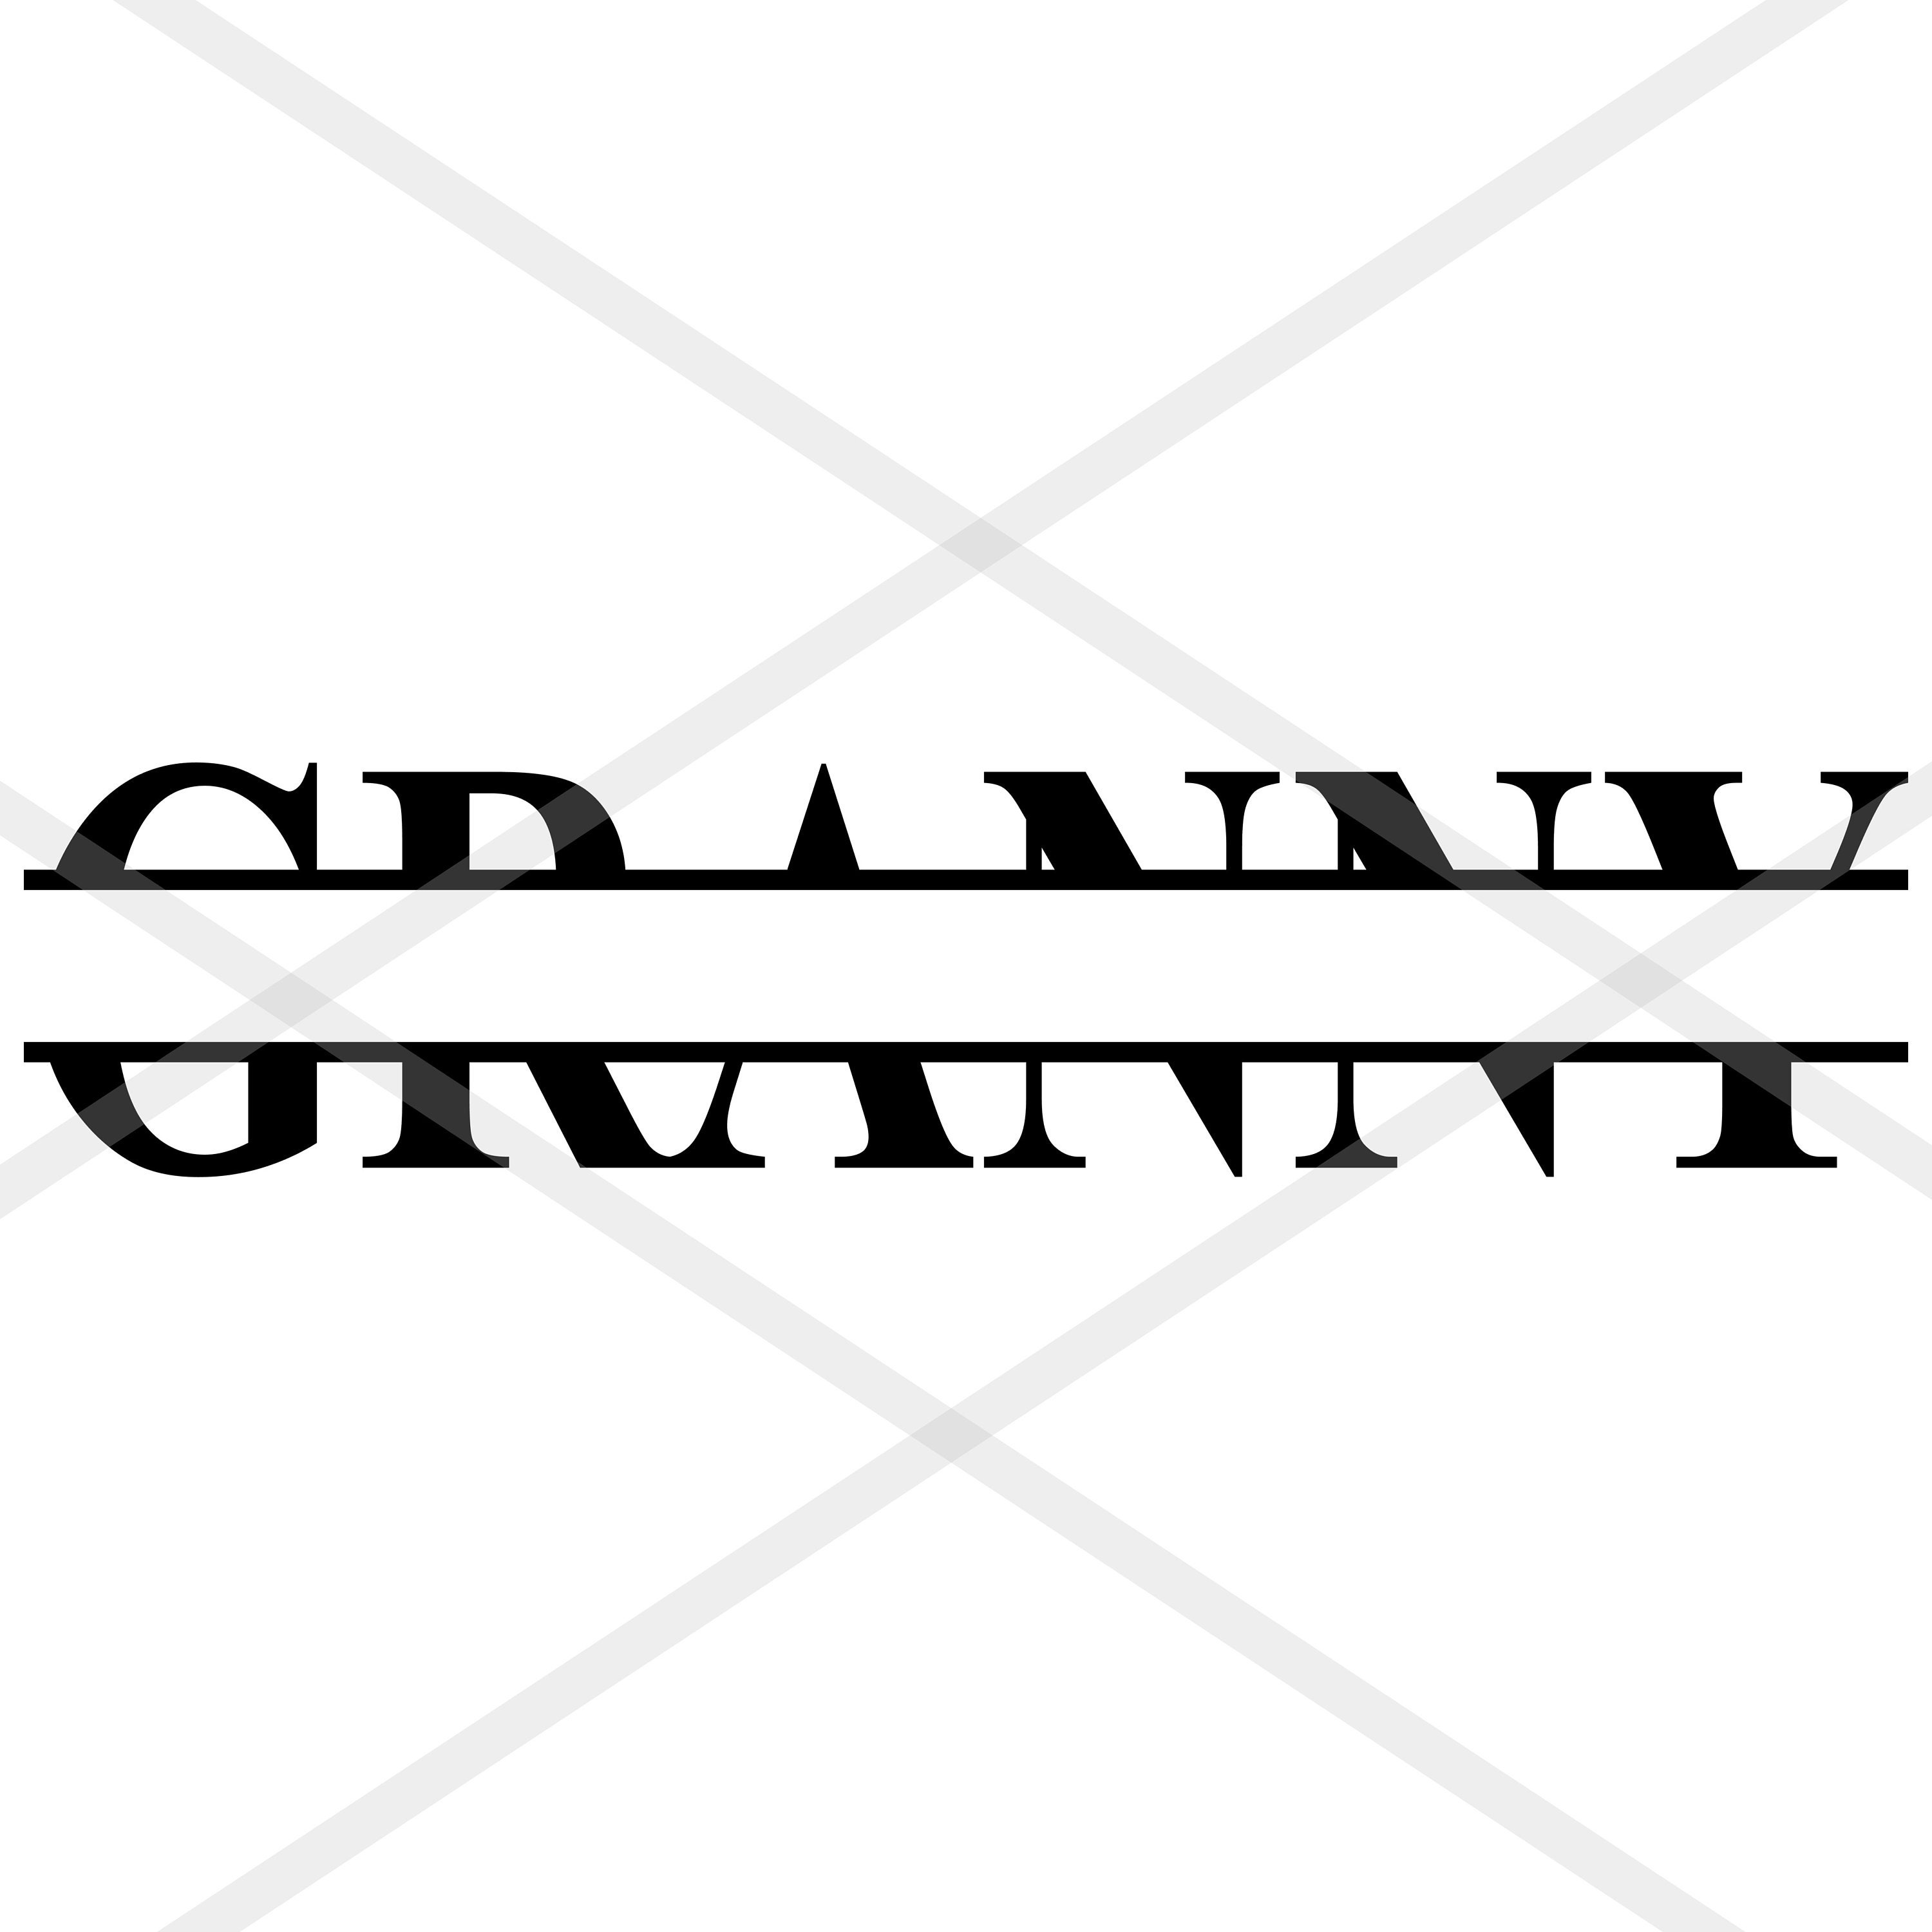 Download GRANNY Split Monogram SVG jpeg png eps dxf Sublimation ...